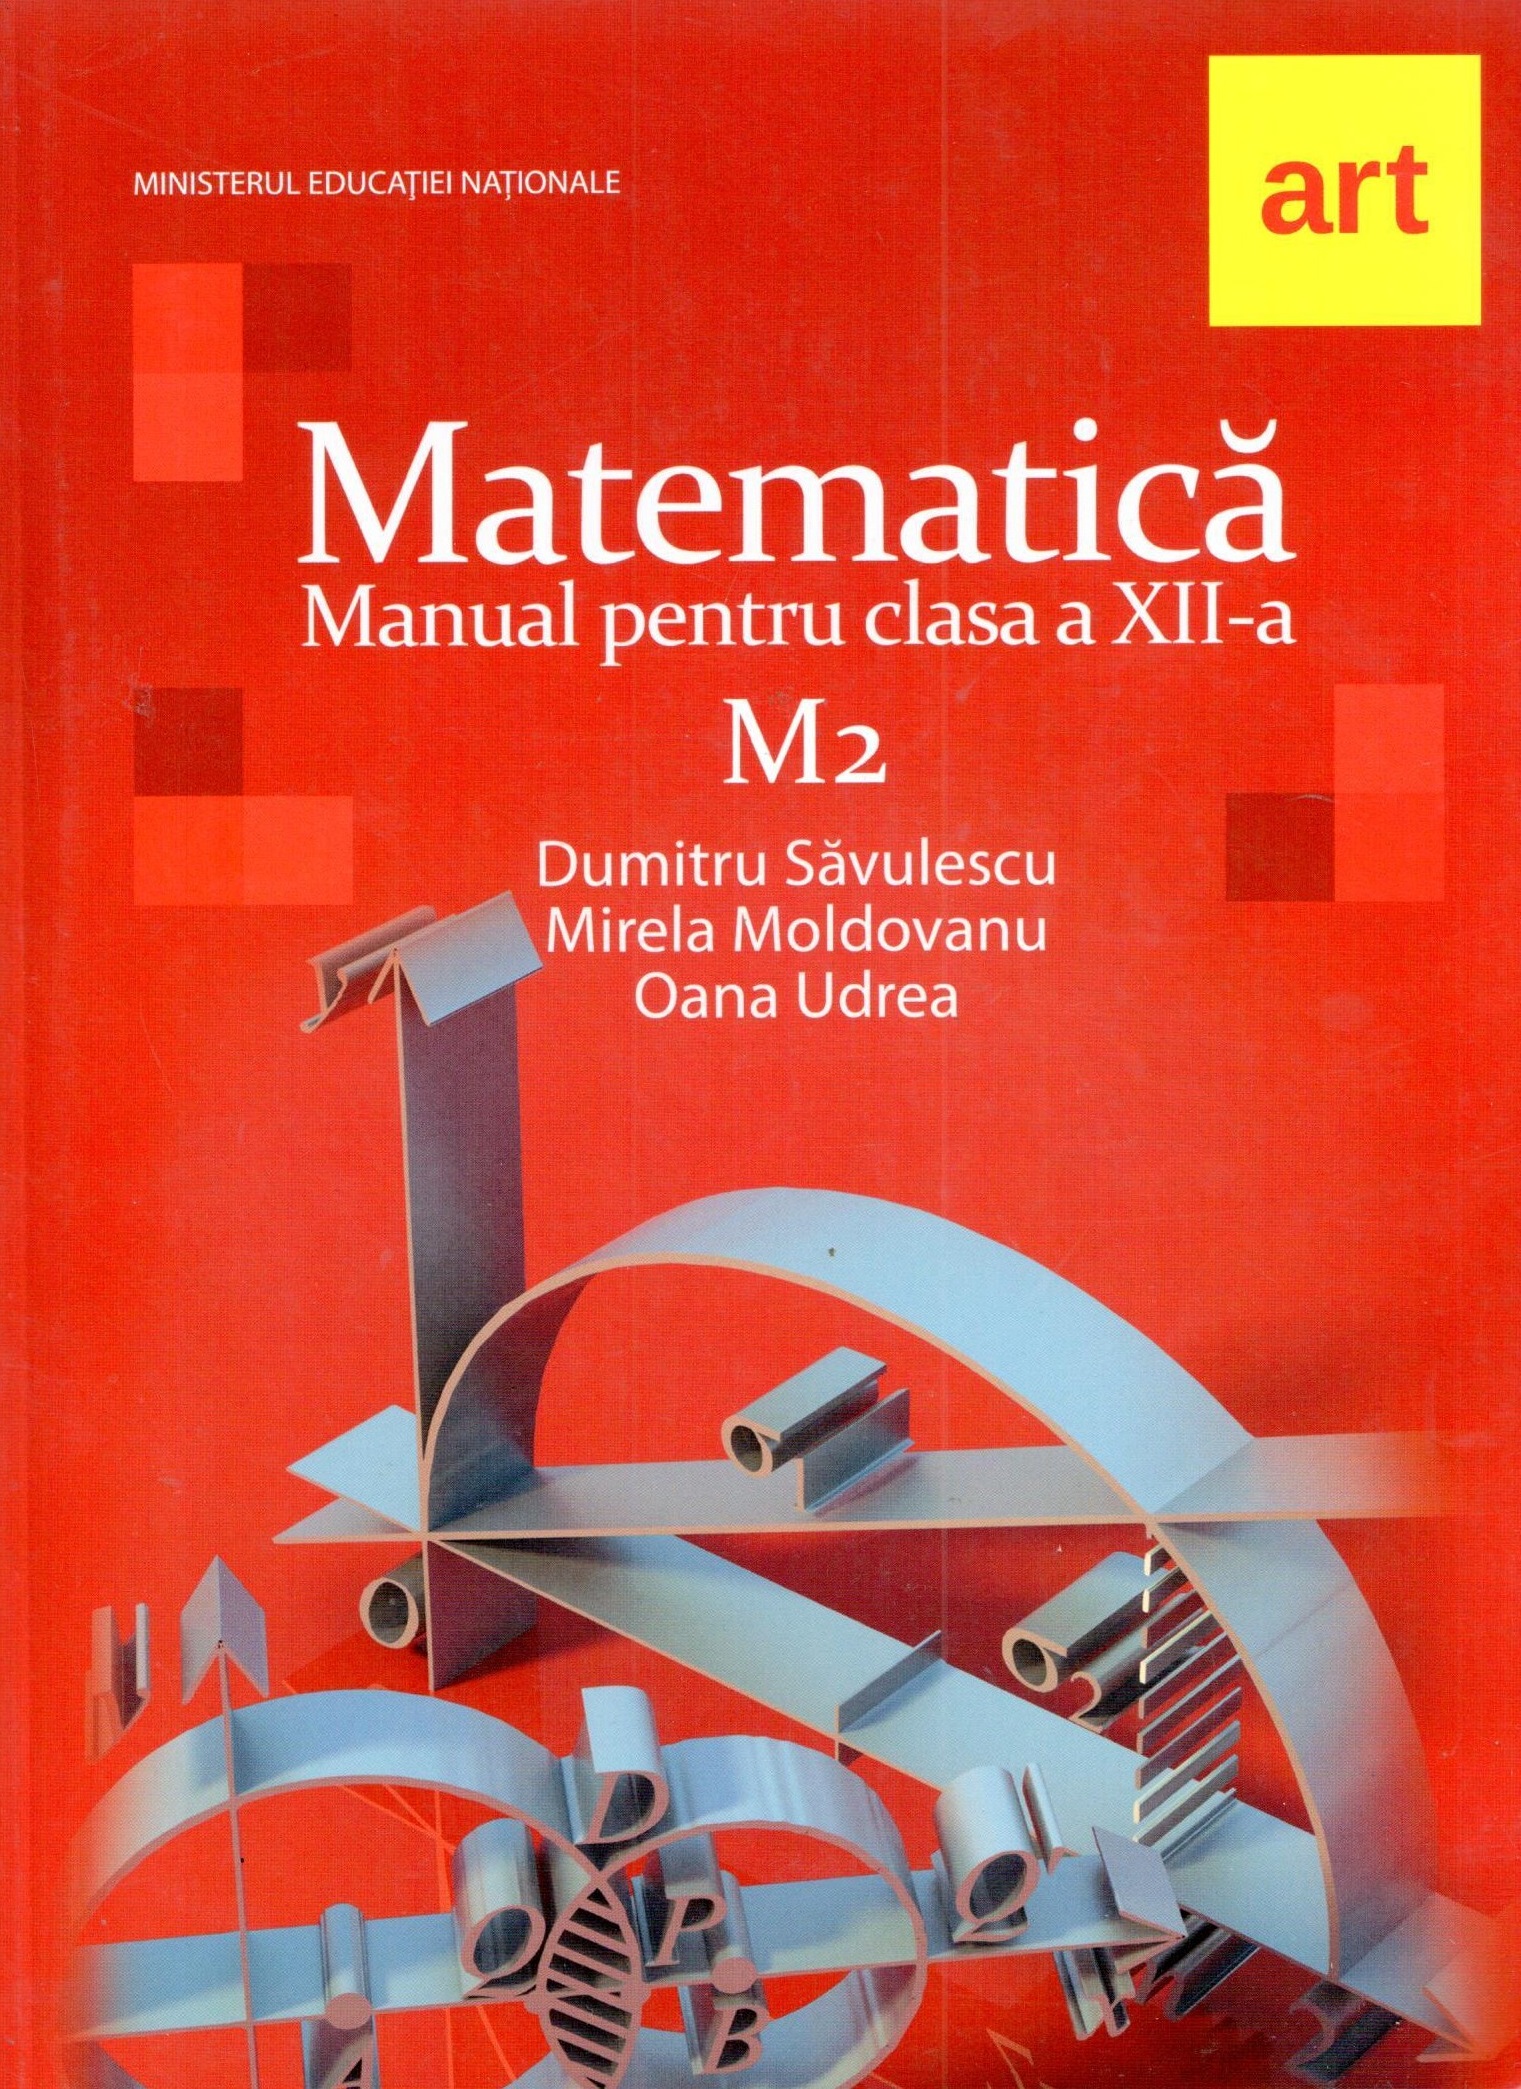 Manual matematica M2 pentru clasa a XII-a